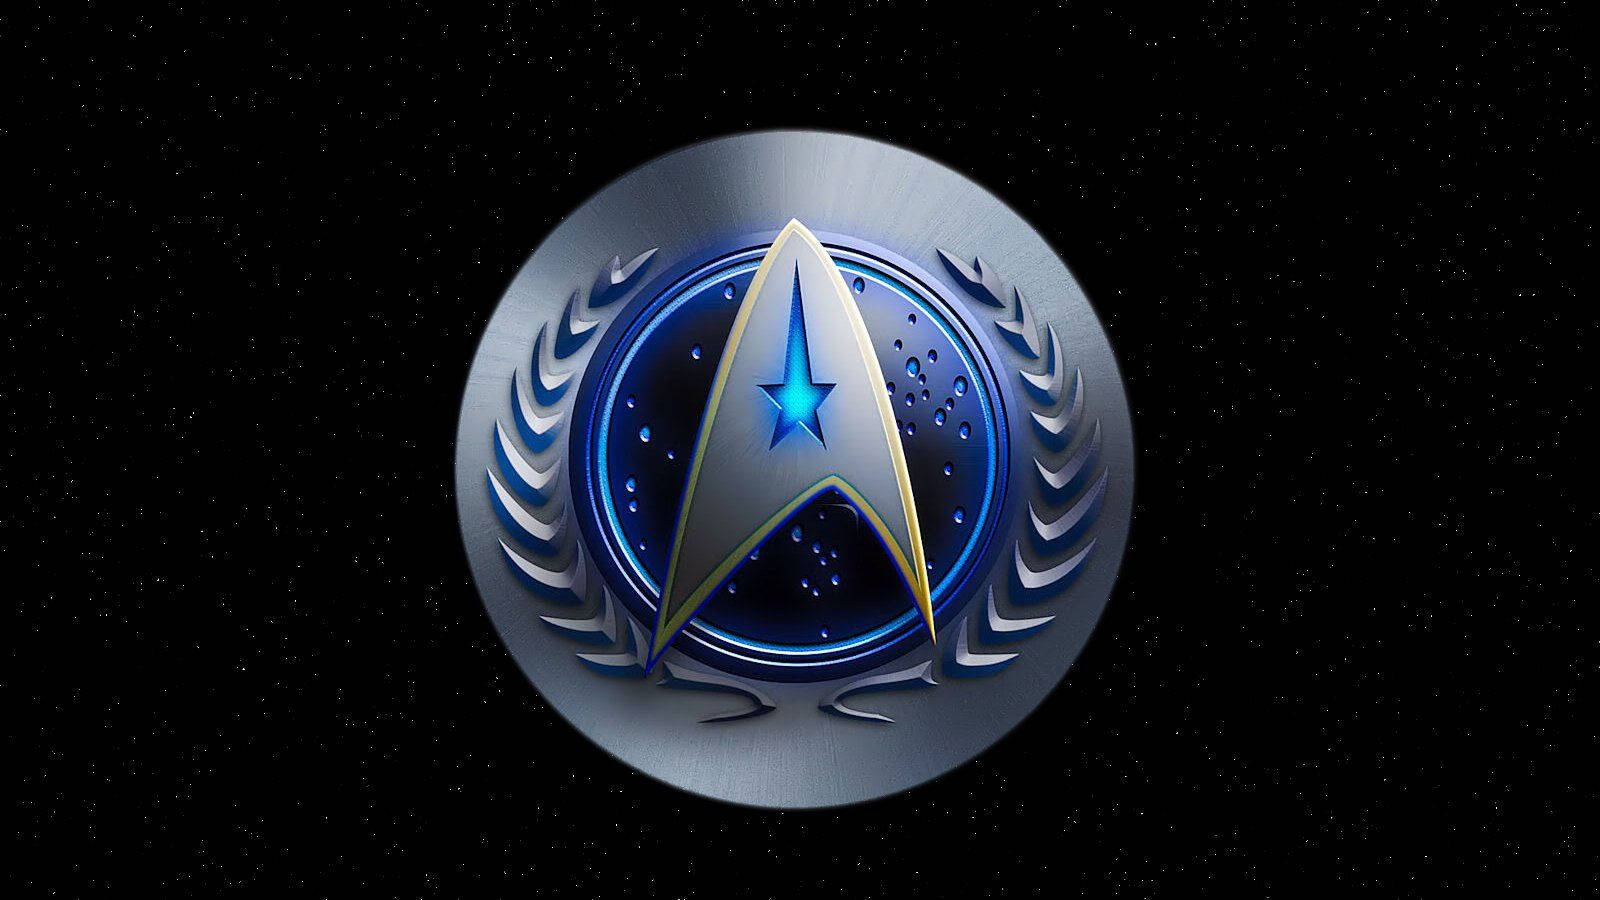 Hd Star Trek Federation Logo Background